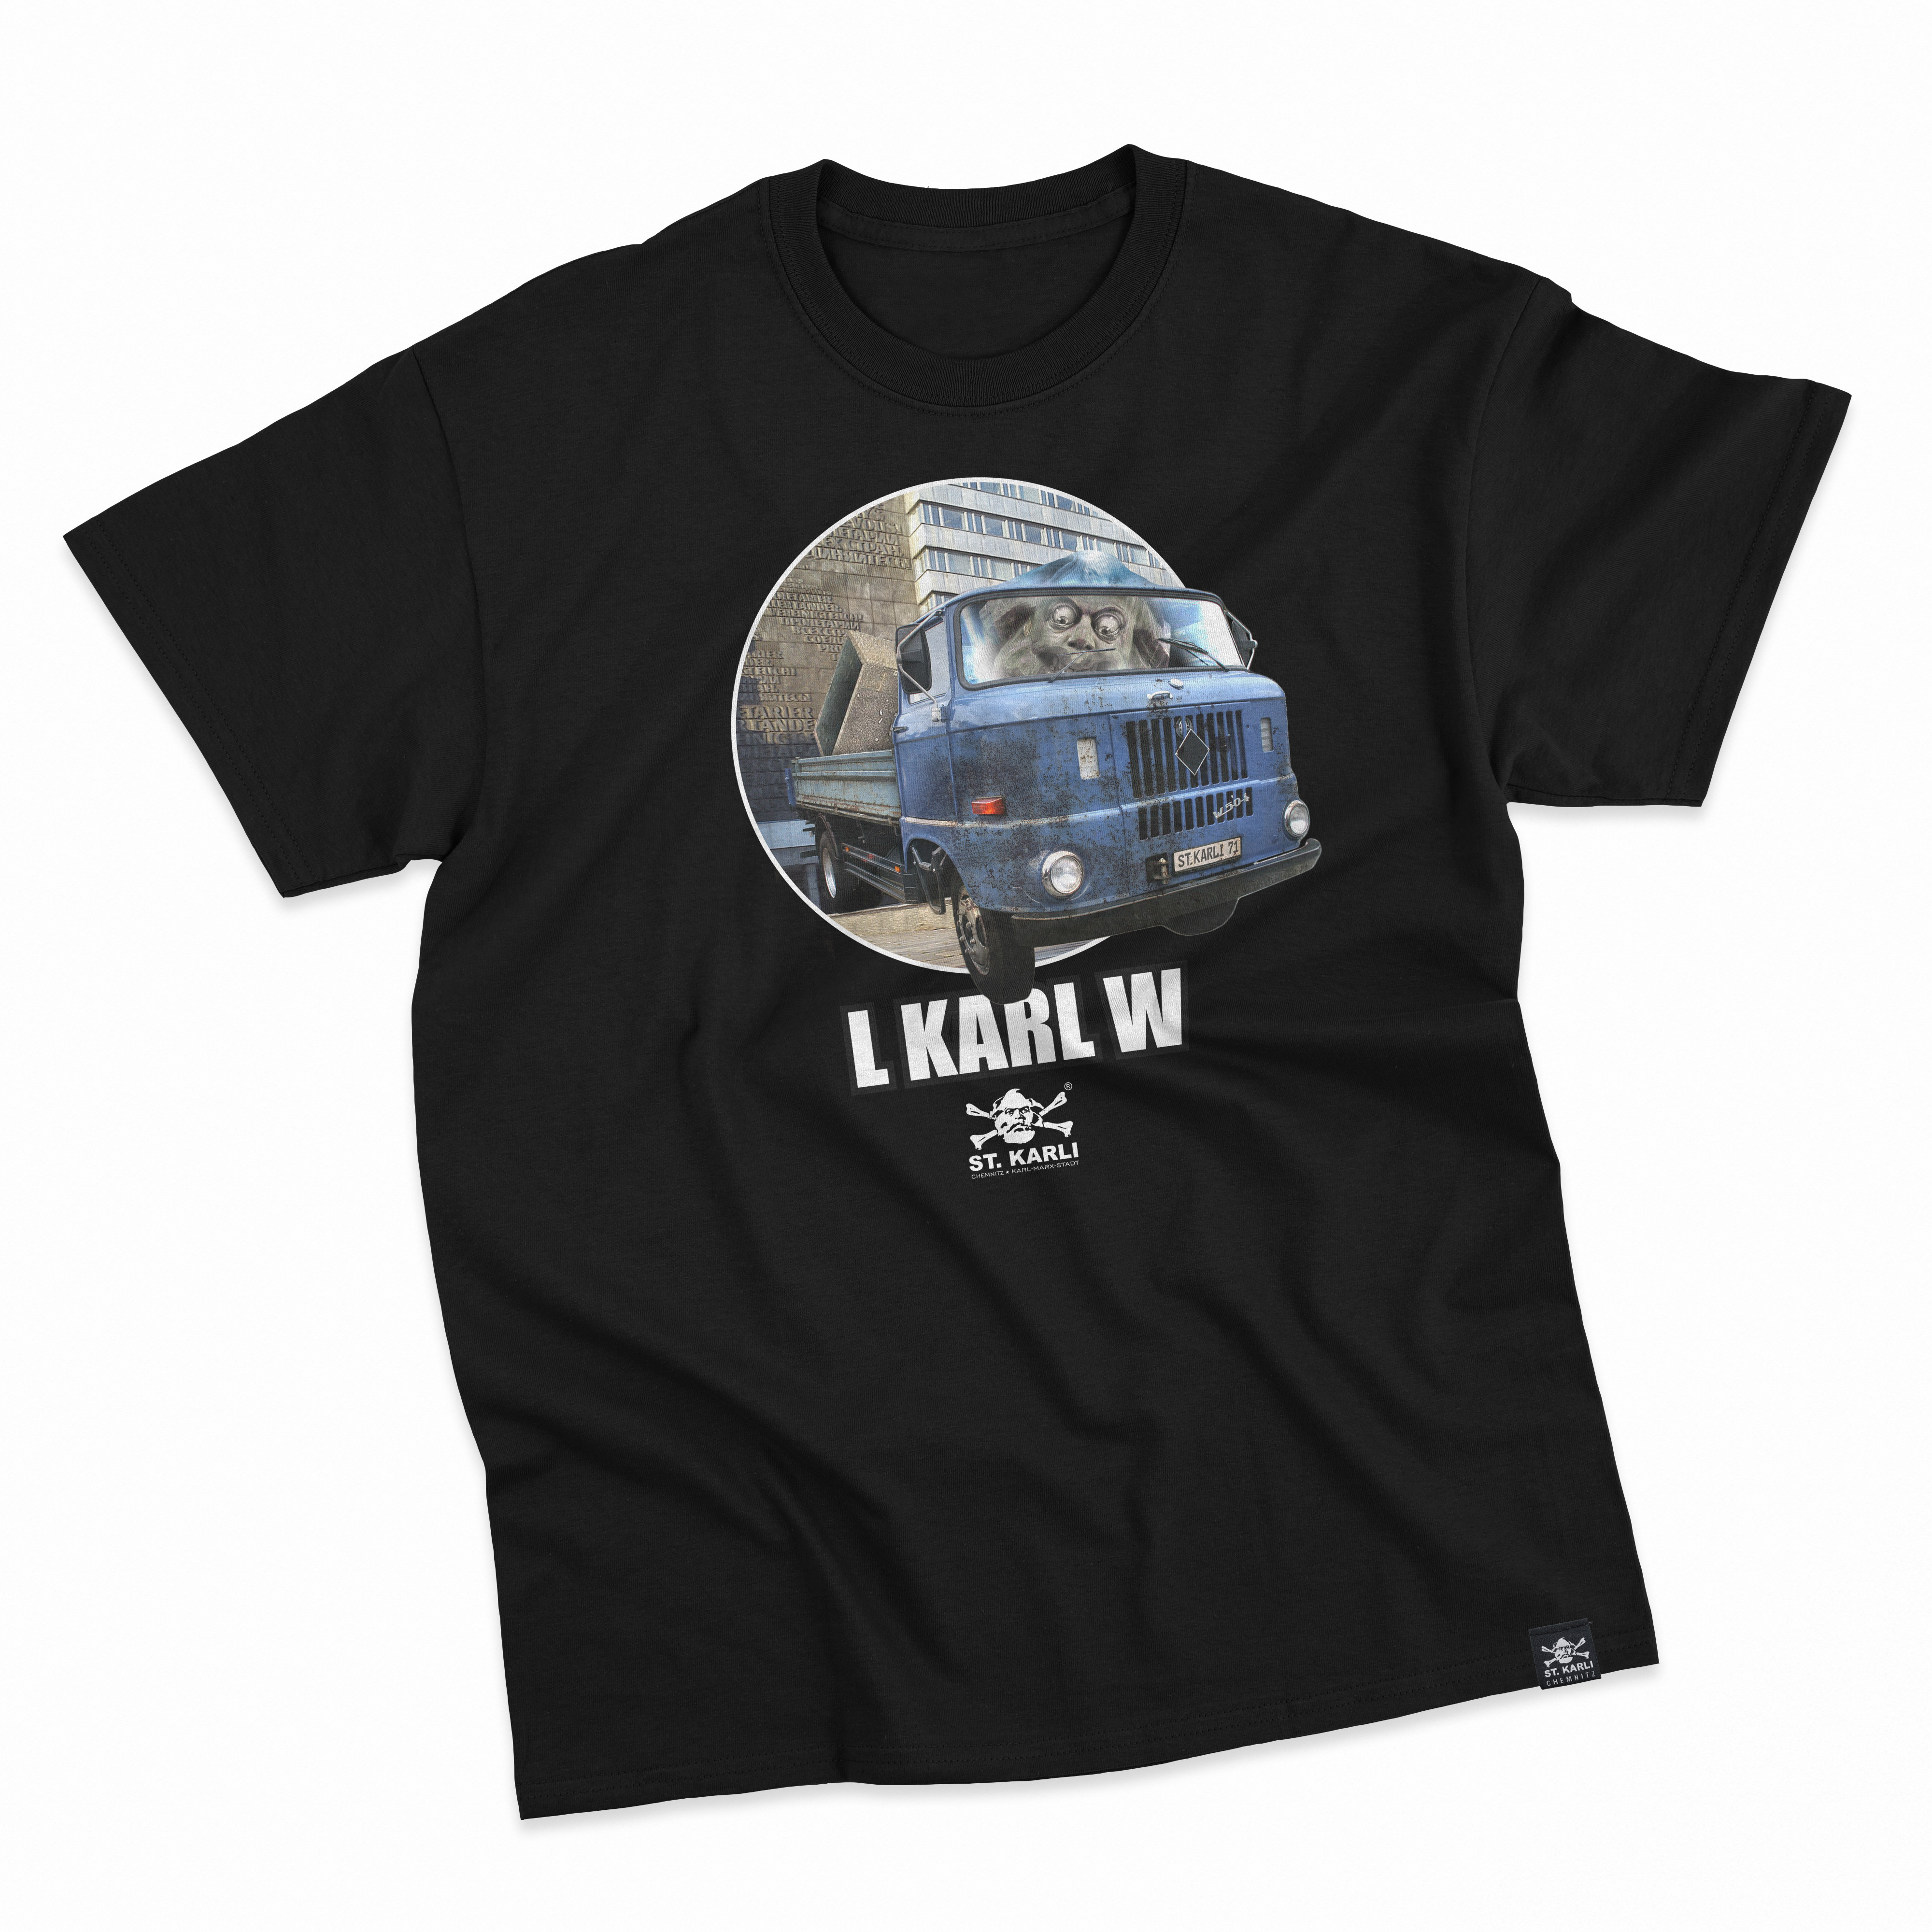 St. Karli T-Shirt "L KARL W"